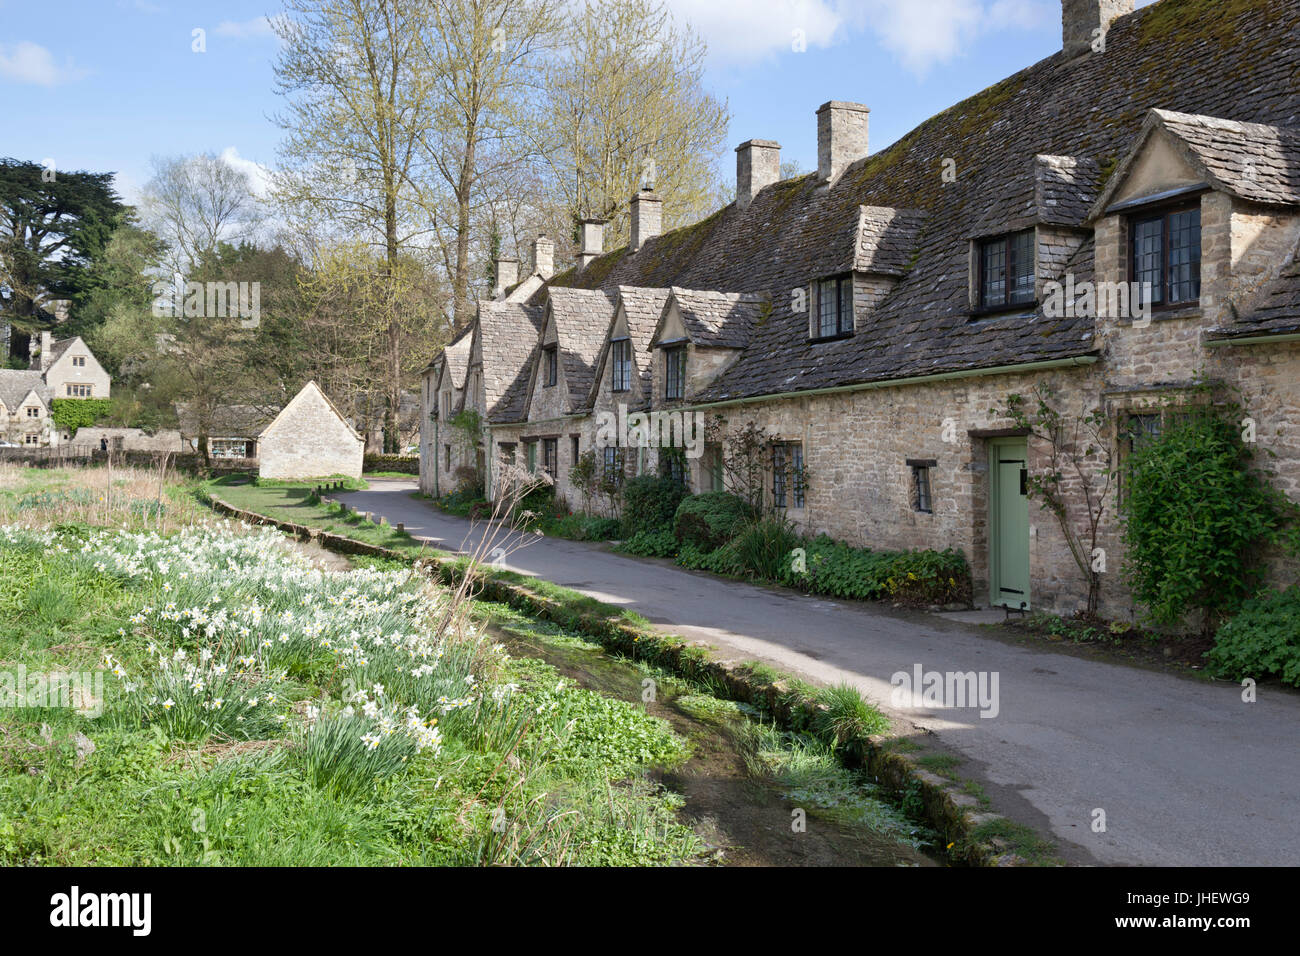 Arlington Row cotswold stone cottages, Bibury, Cotswolds, Gloucestershire, England, United Kingdom, Europe Stock Photo